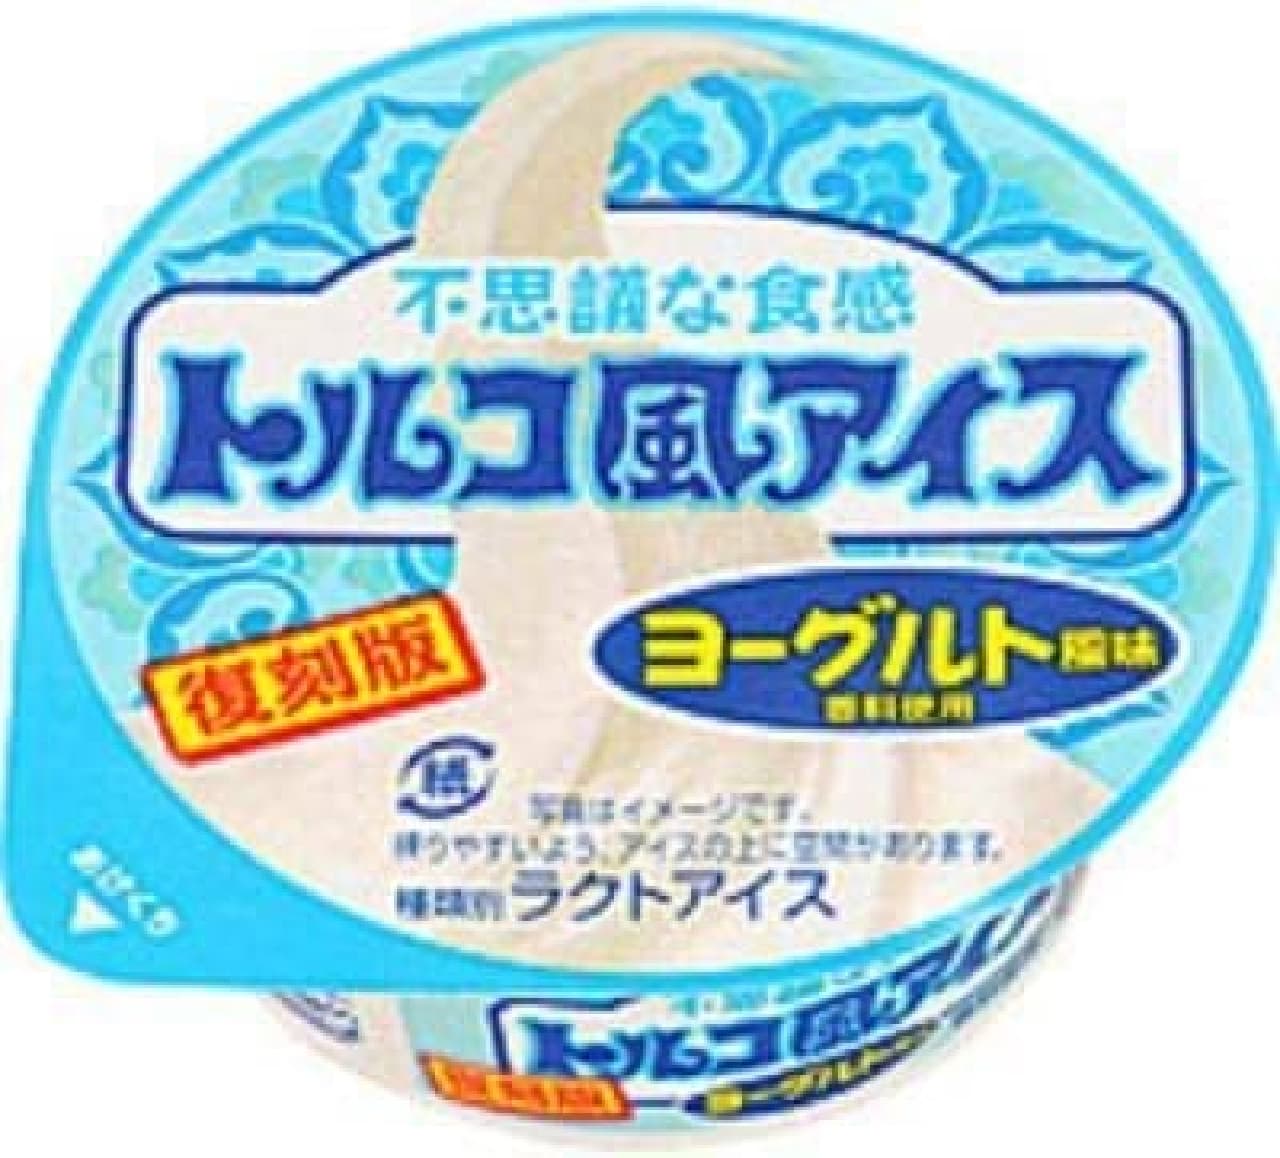 Lotte Turkish ice yogurt